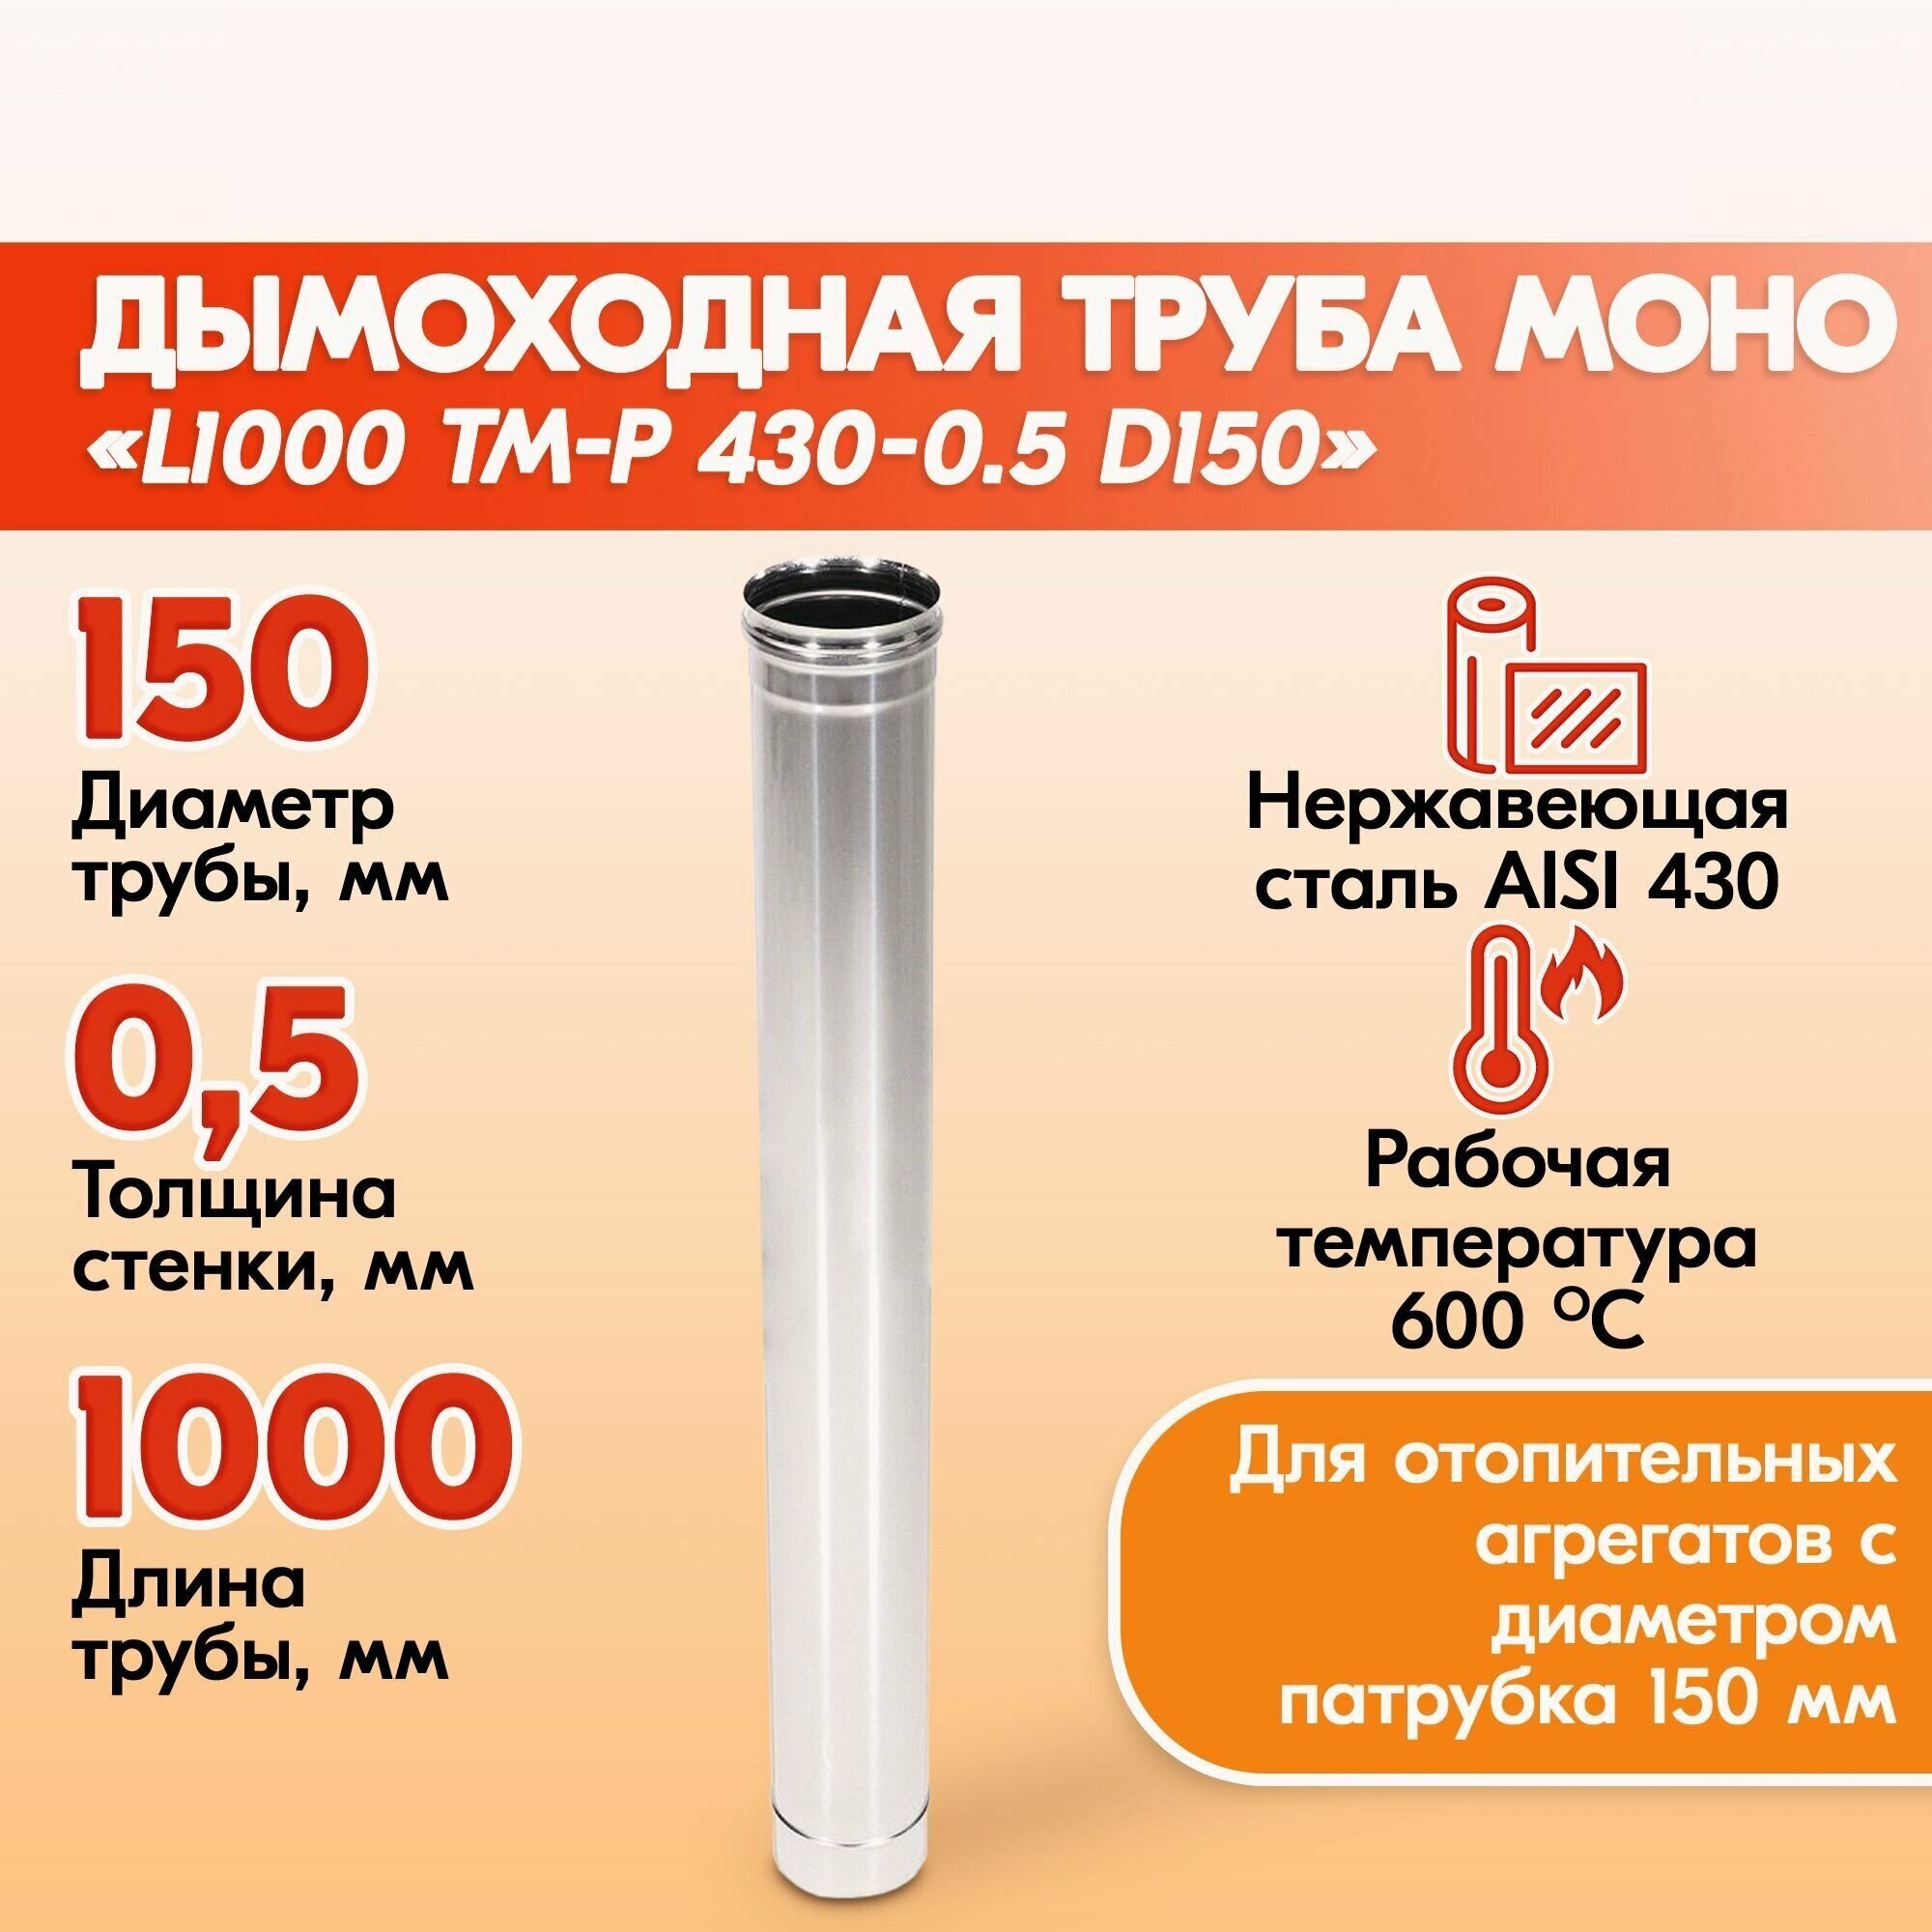 Трубы для дымохода из нержавейки L1000 ТМ-Р 430-0.5 D150 для бани газовый дымоход для котла